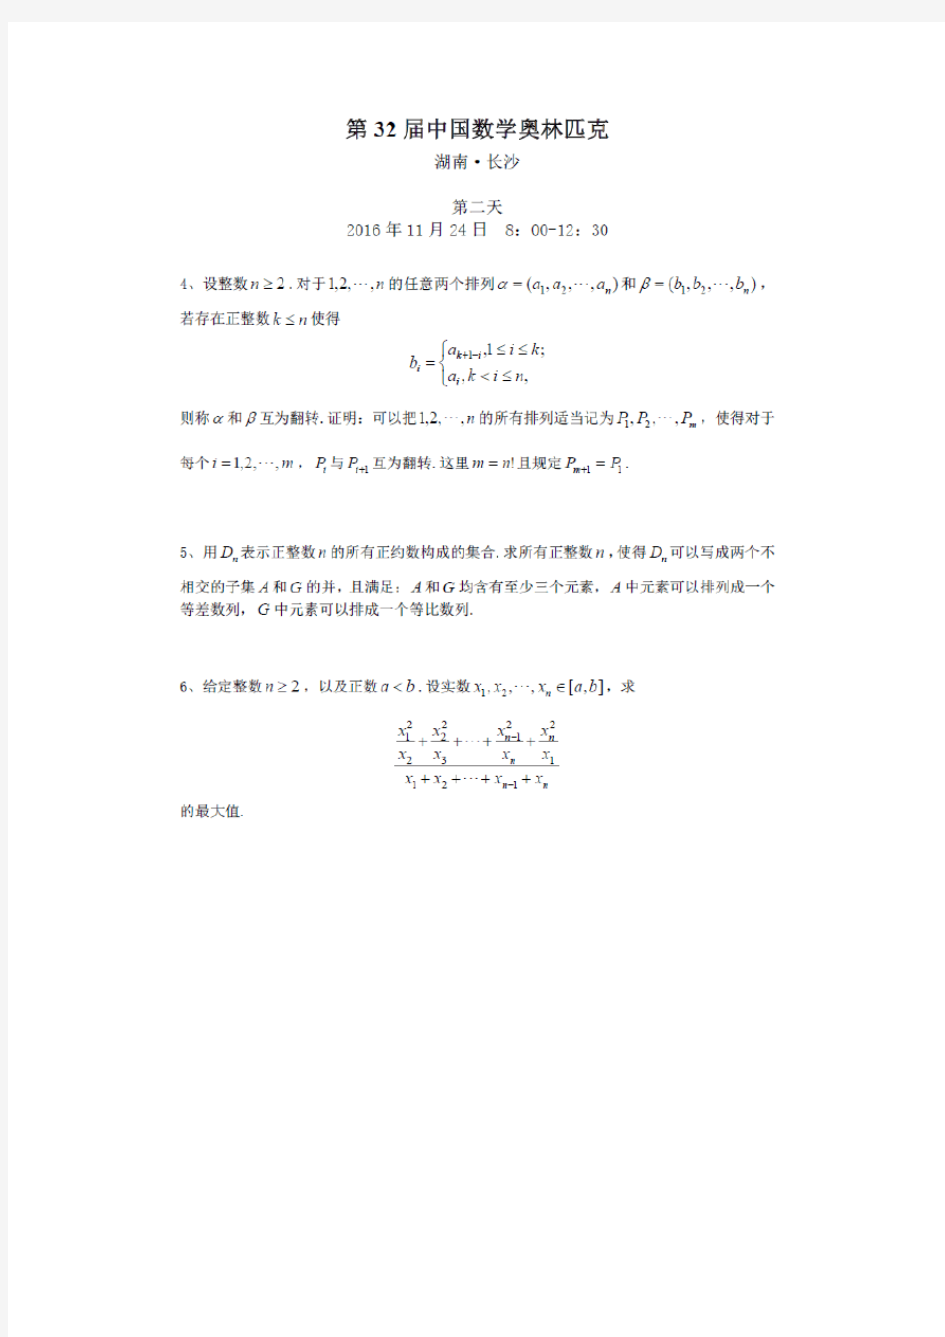 2016年第32届中国数学奥林匹克(CMO)竞赛试题(图片版,无答案)